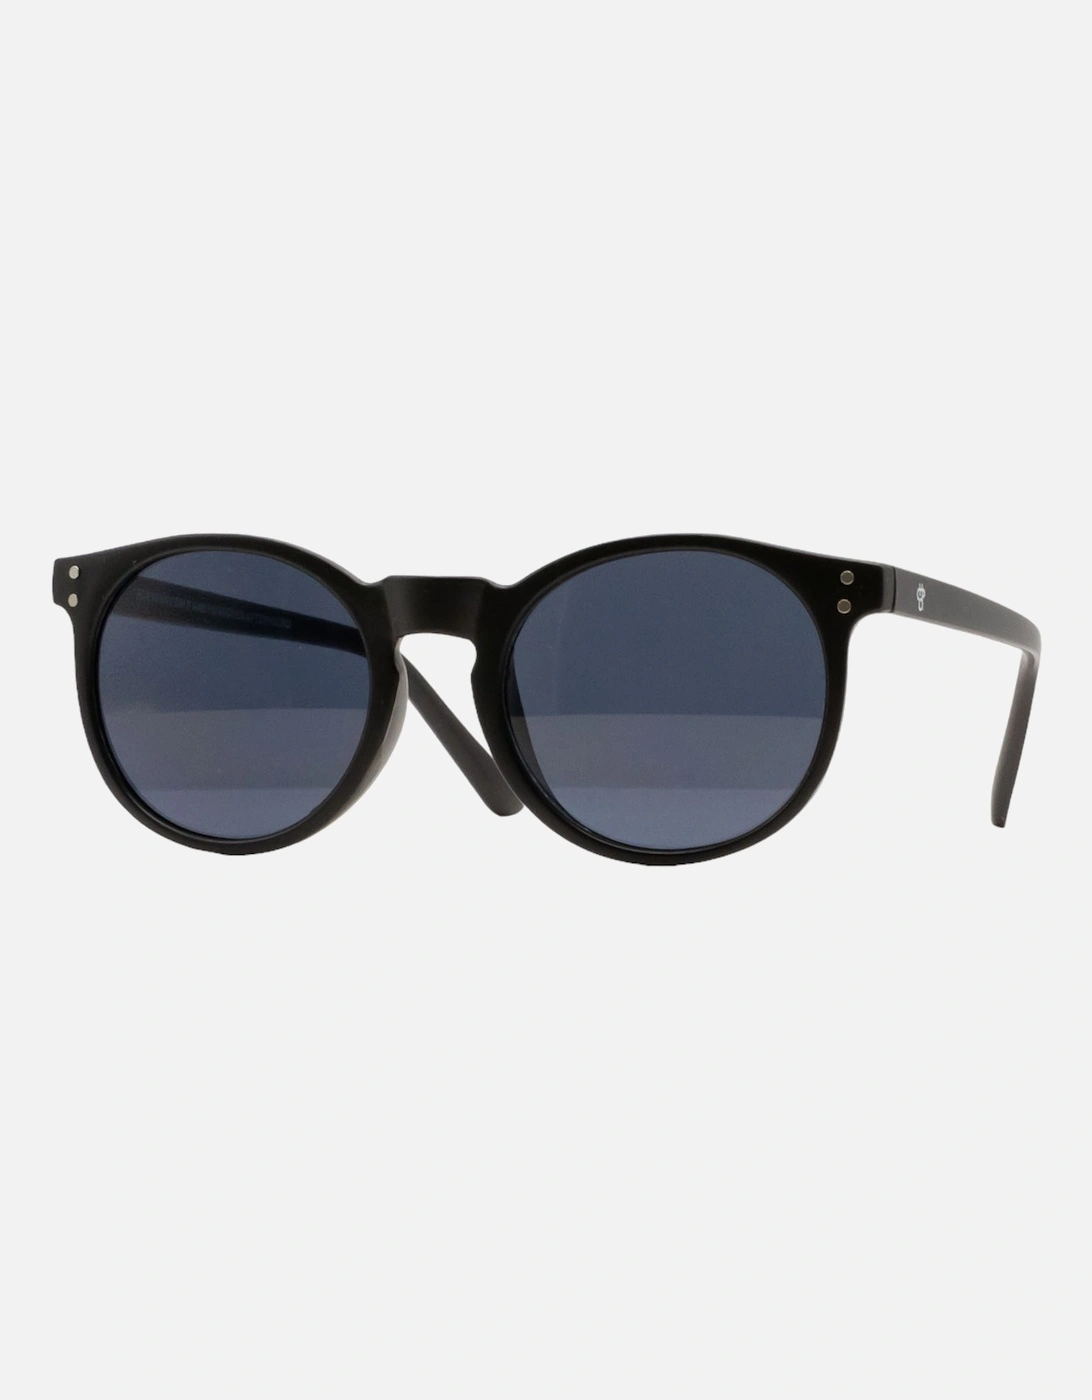 Coxos Sunglasses - Black, 4 of 3